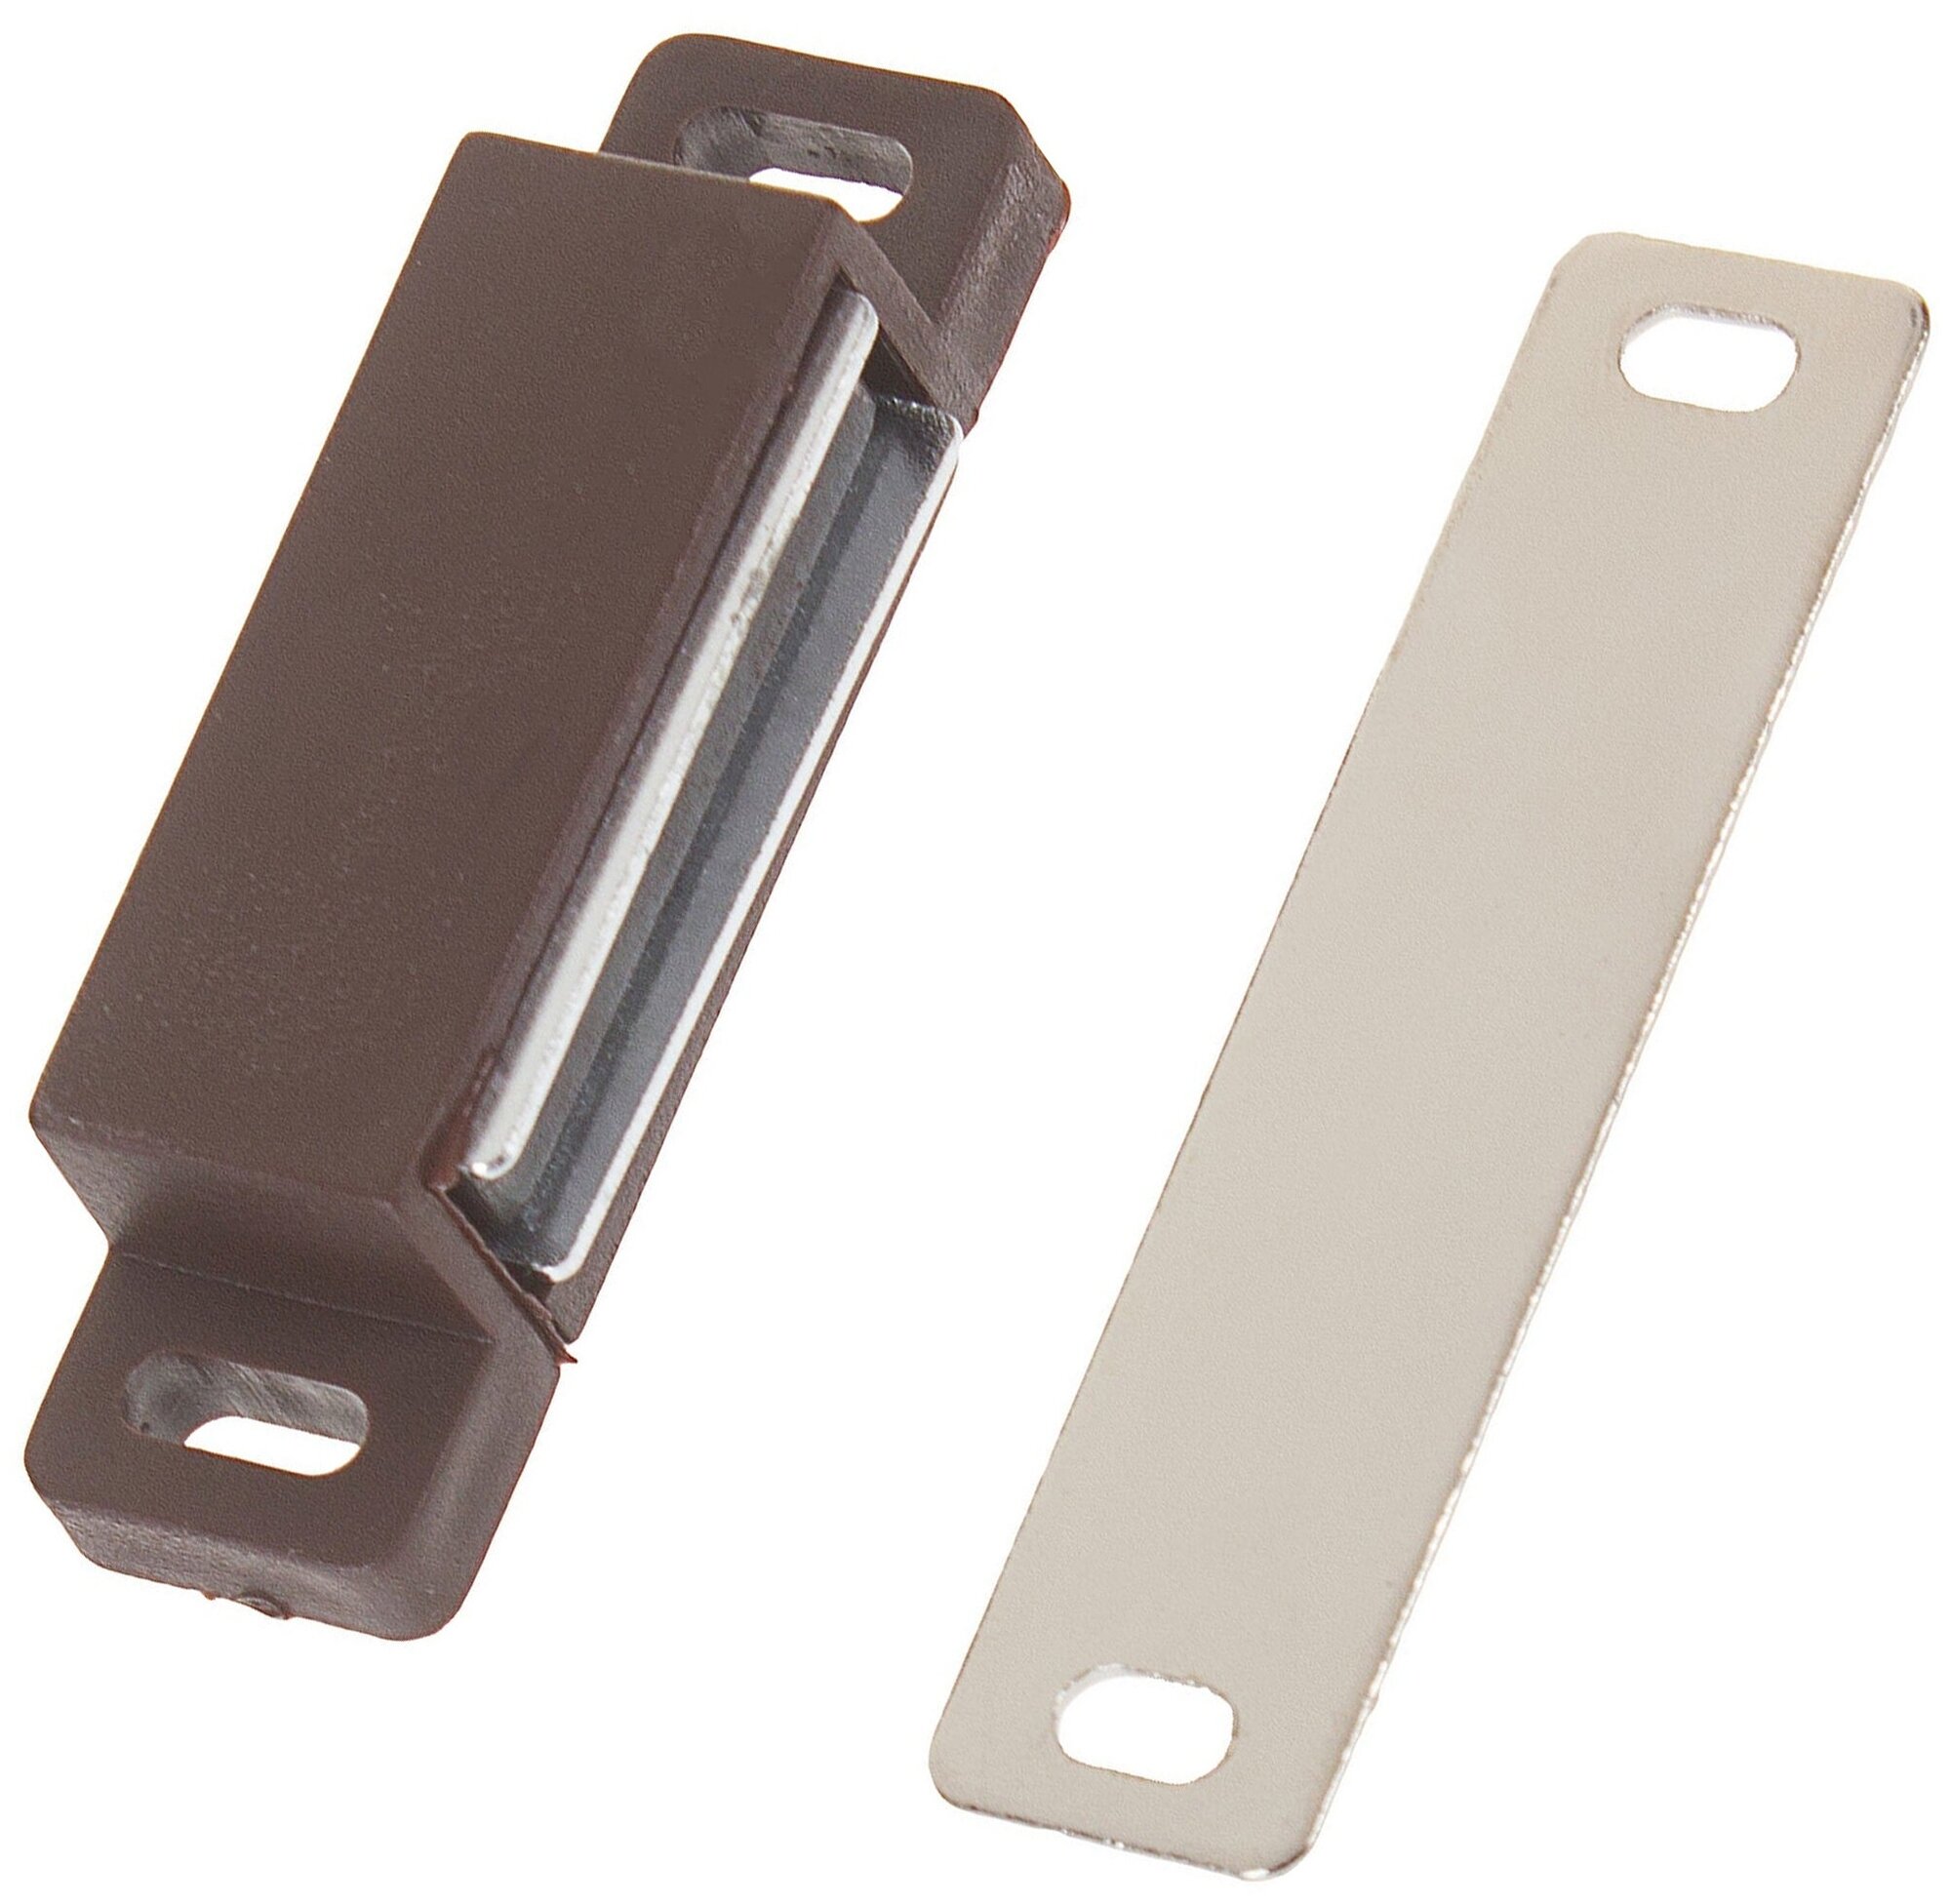 Защёлка магнитная, 58х15 мм: изделие из пластика для прочной фиксации дверок, тумбочек и шкафов; цвет коричневый; держит створку в закрытом положении